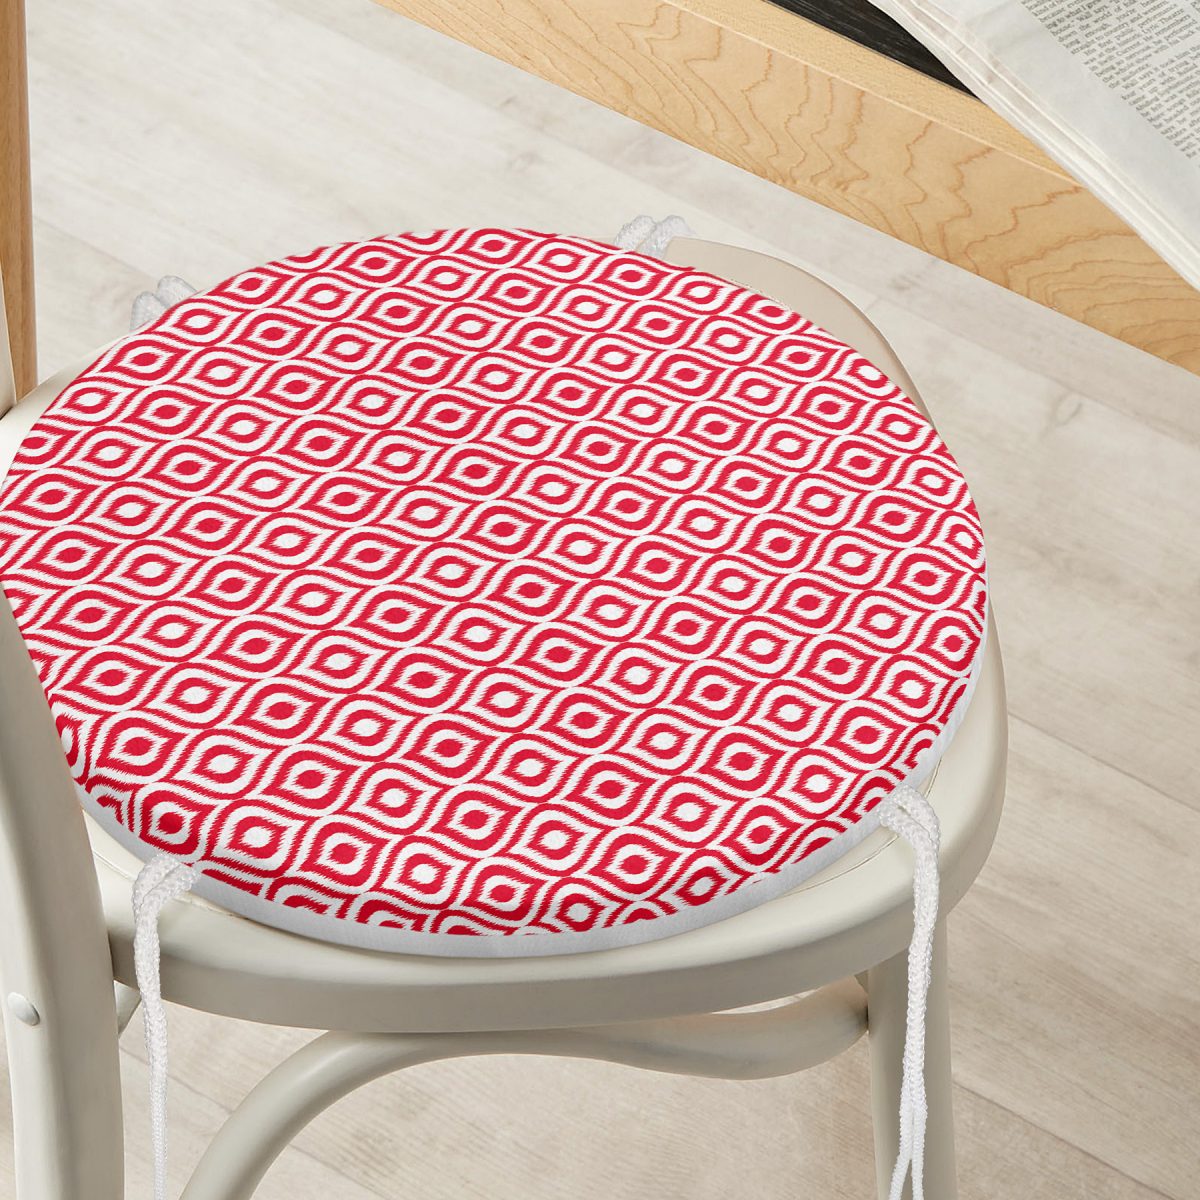 Özel Tasarım Kırmızı İkat Desenli Dijital Baskılı Yuvarlak Fermuarlı Sandalye Minderi Realhomes